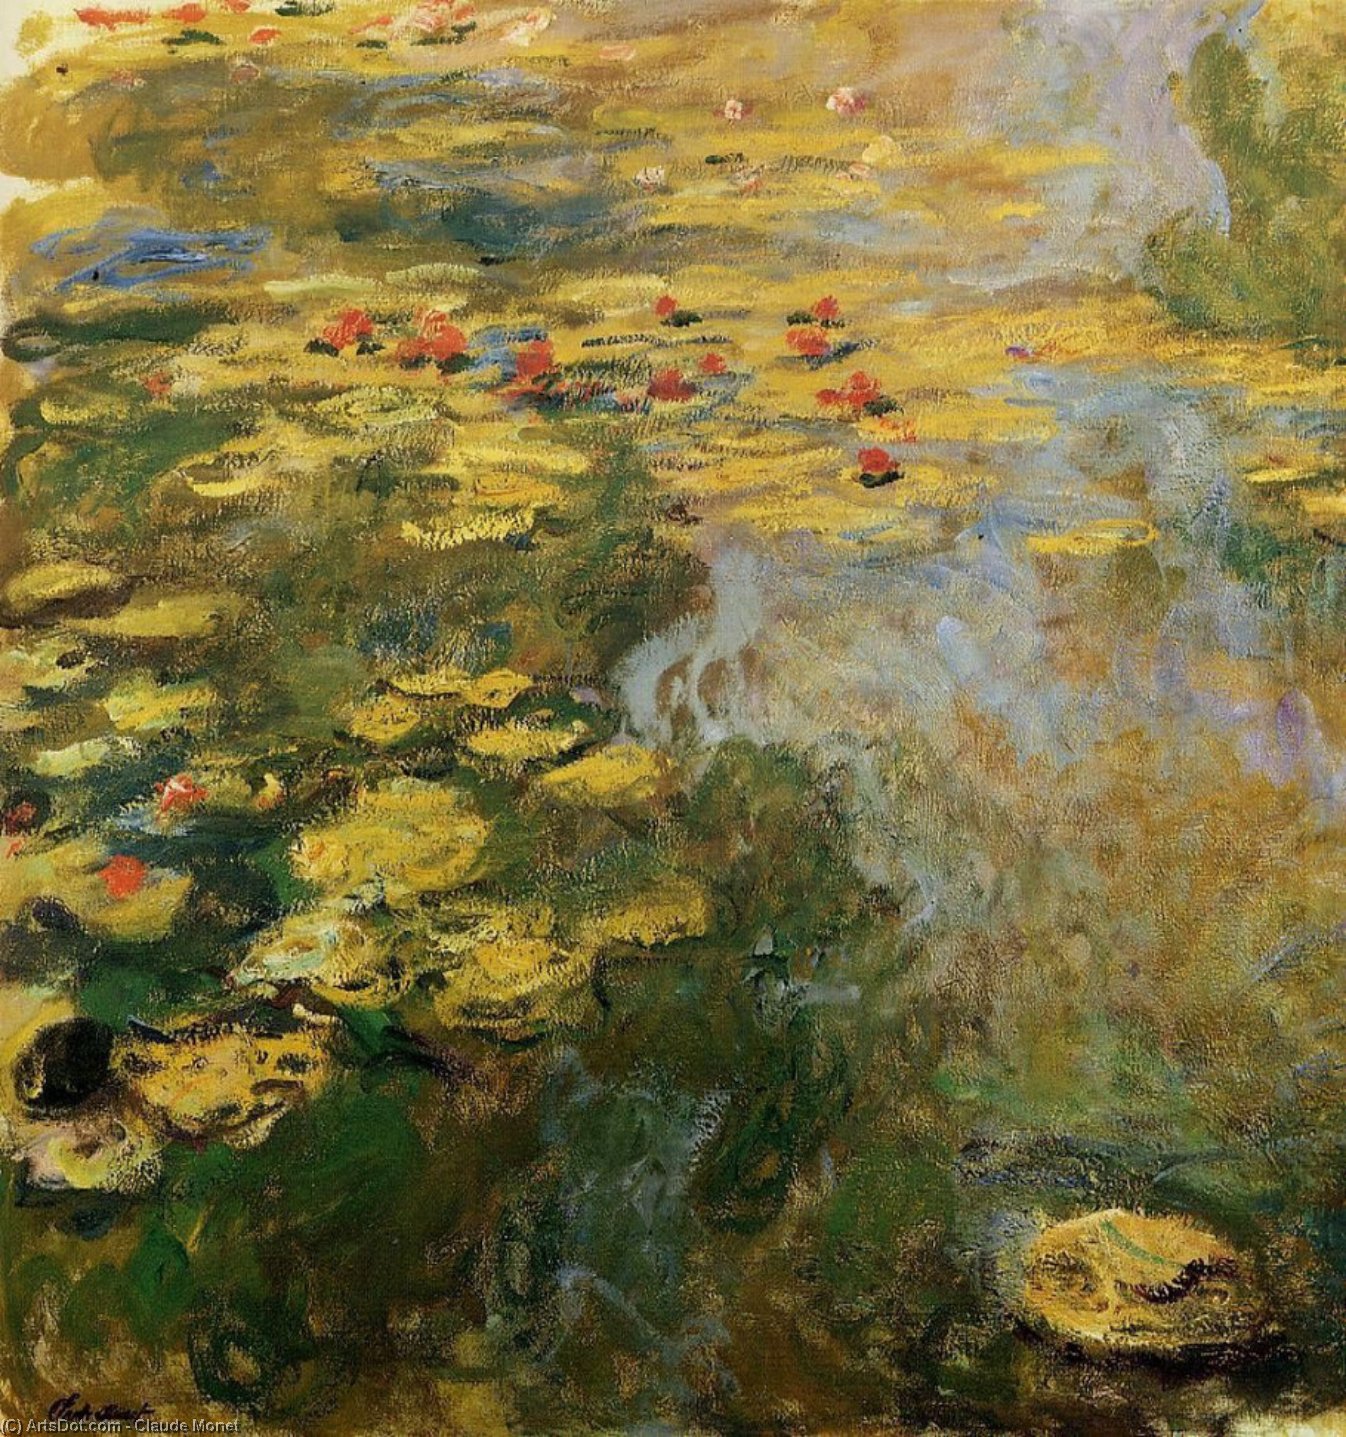 Compre Museu De Reproduções De Arte A Lagoa da Água-Lily (lado esquerdo), 1917 por Claude Monet (1840-1926, France) | ArtsDot.com